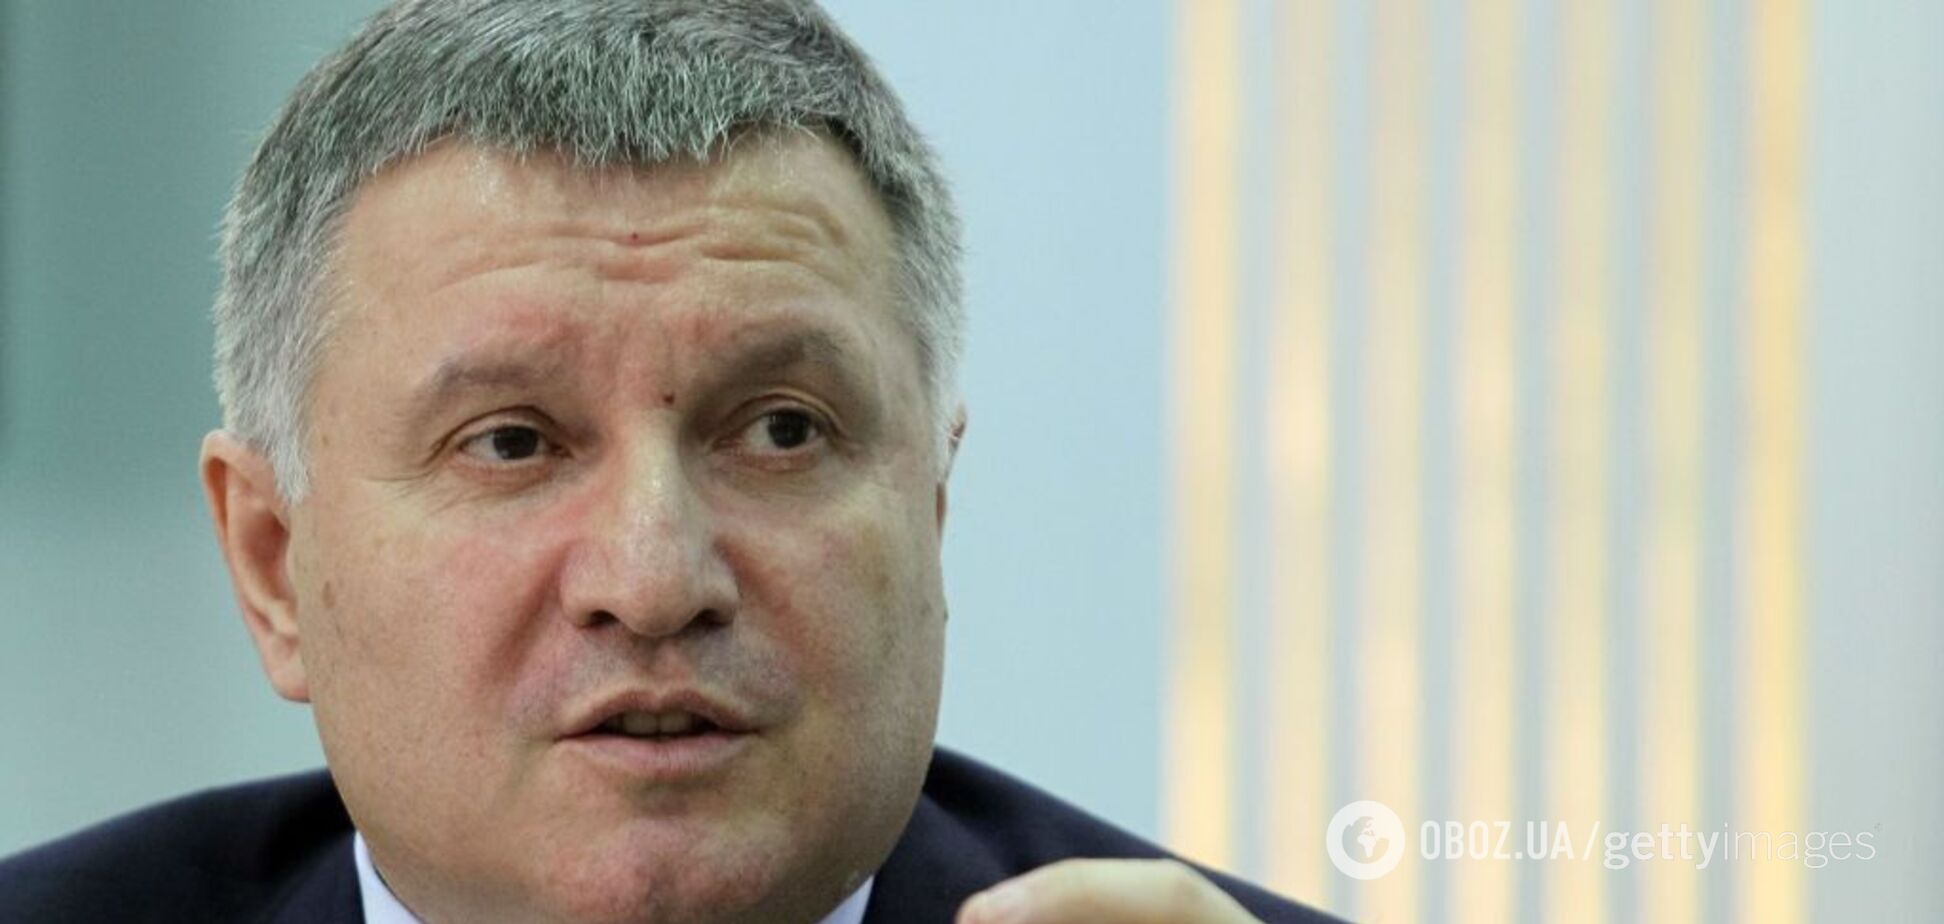 Дебати на стадіоні: Аваков попередив про загрозу для України